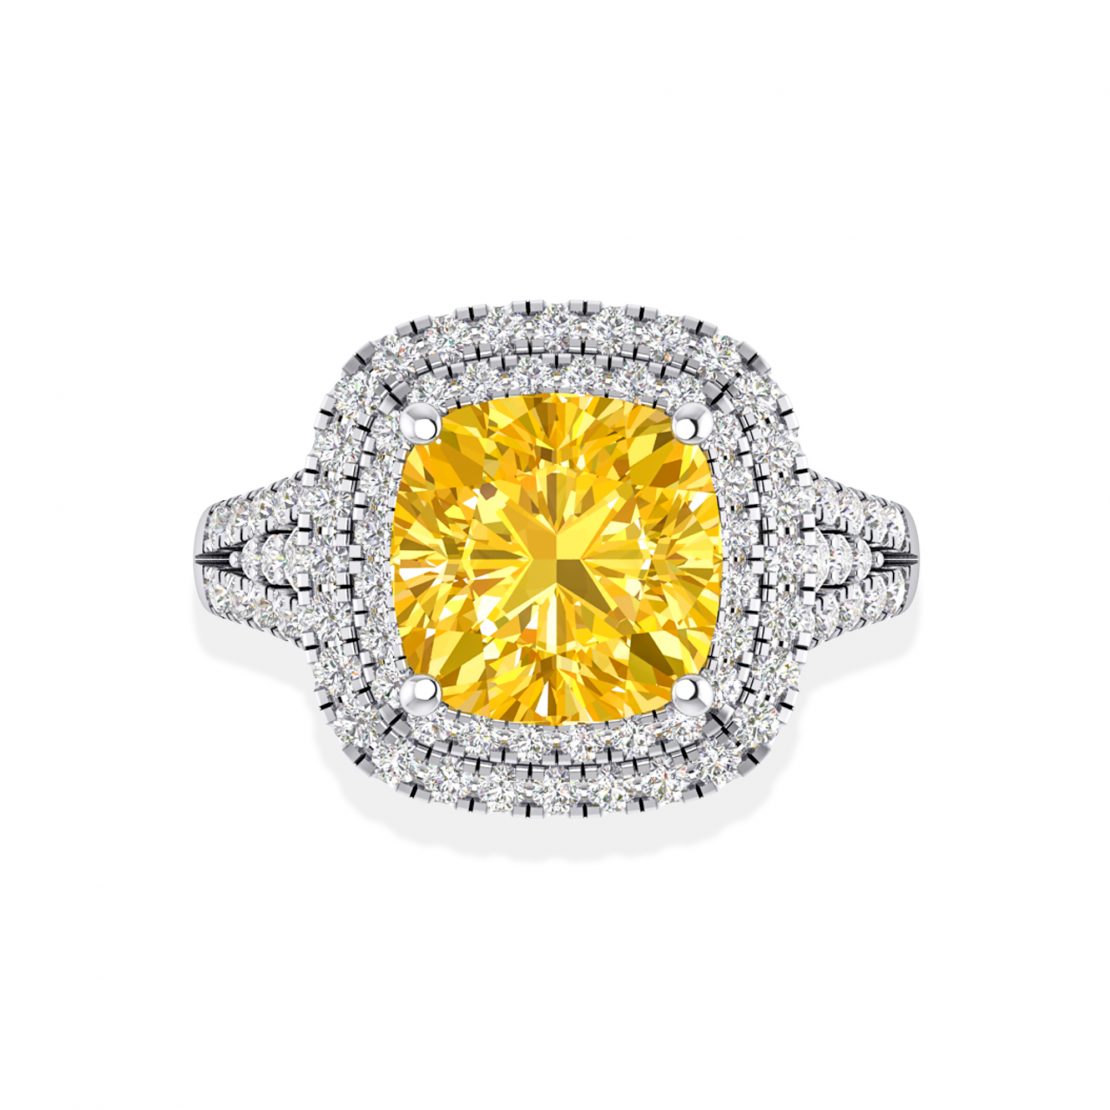 Kim cương màu vàng 1 carat bao nhiêu tiền